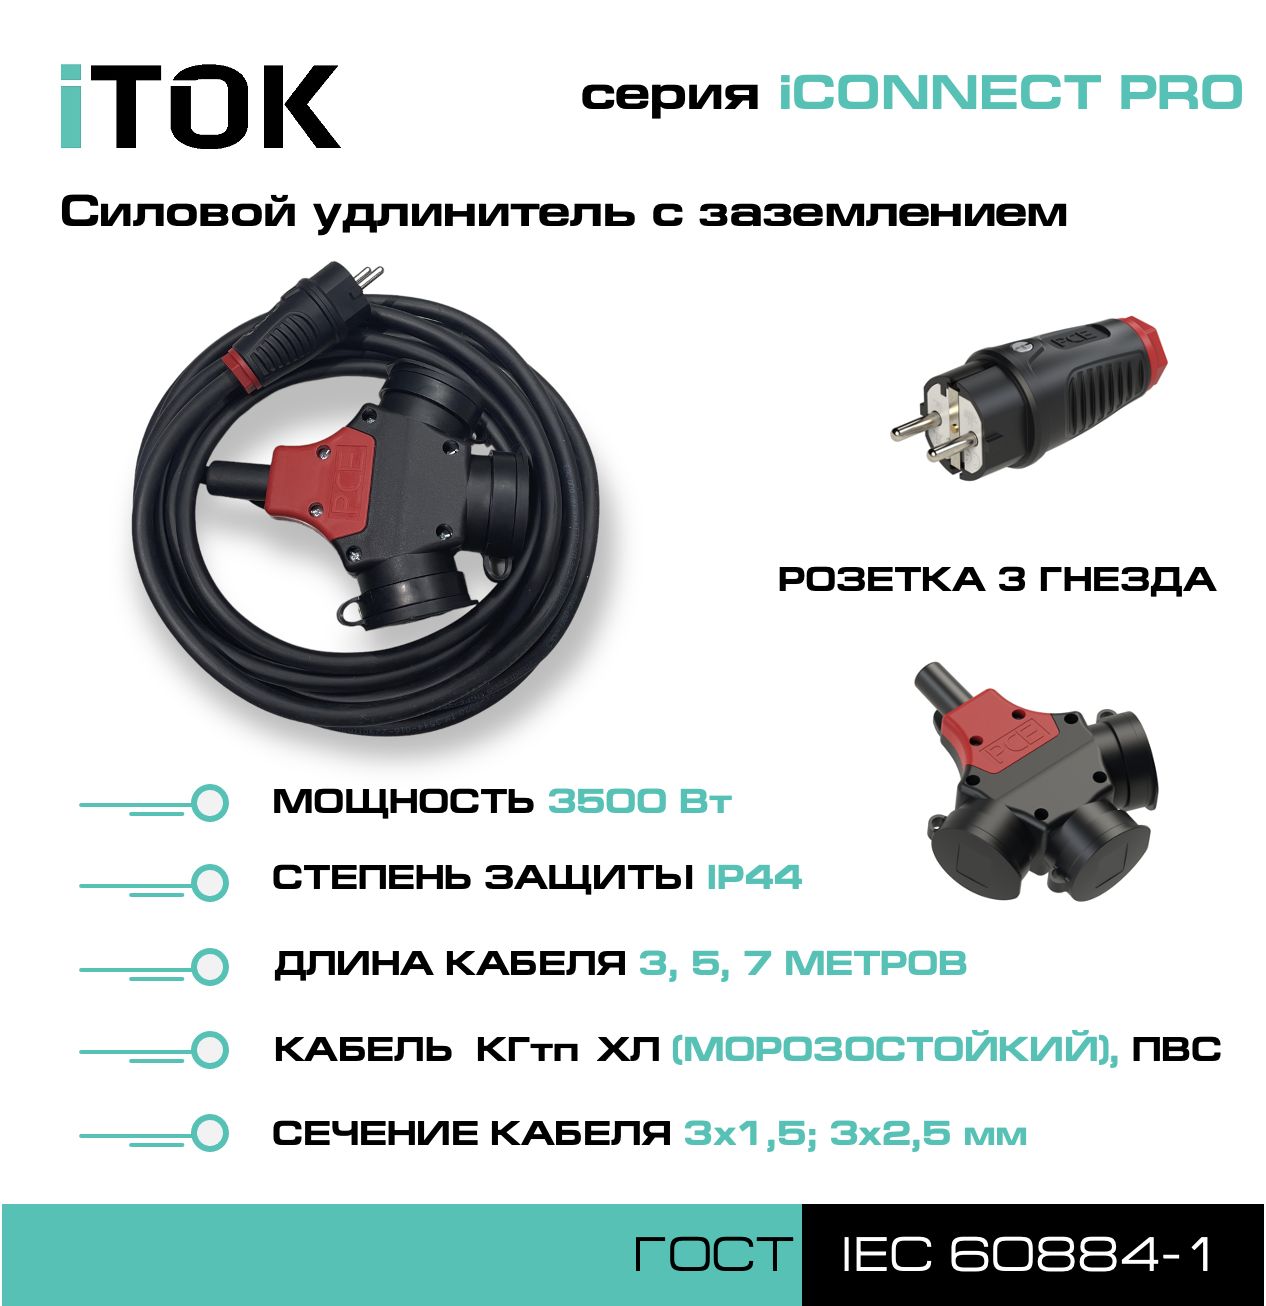 Удлинитель iTOK iCONNECT PRO 3 розетки 7м ПВС 3х2,5 мм IP44